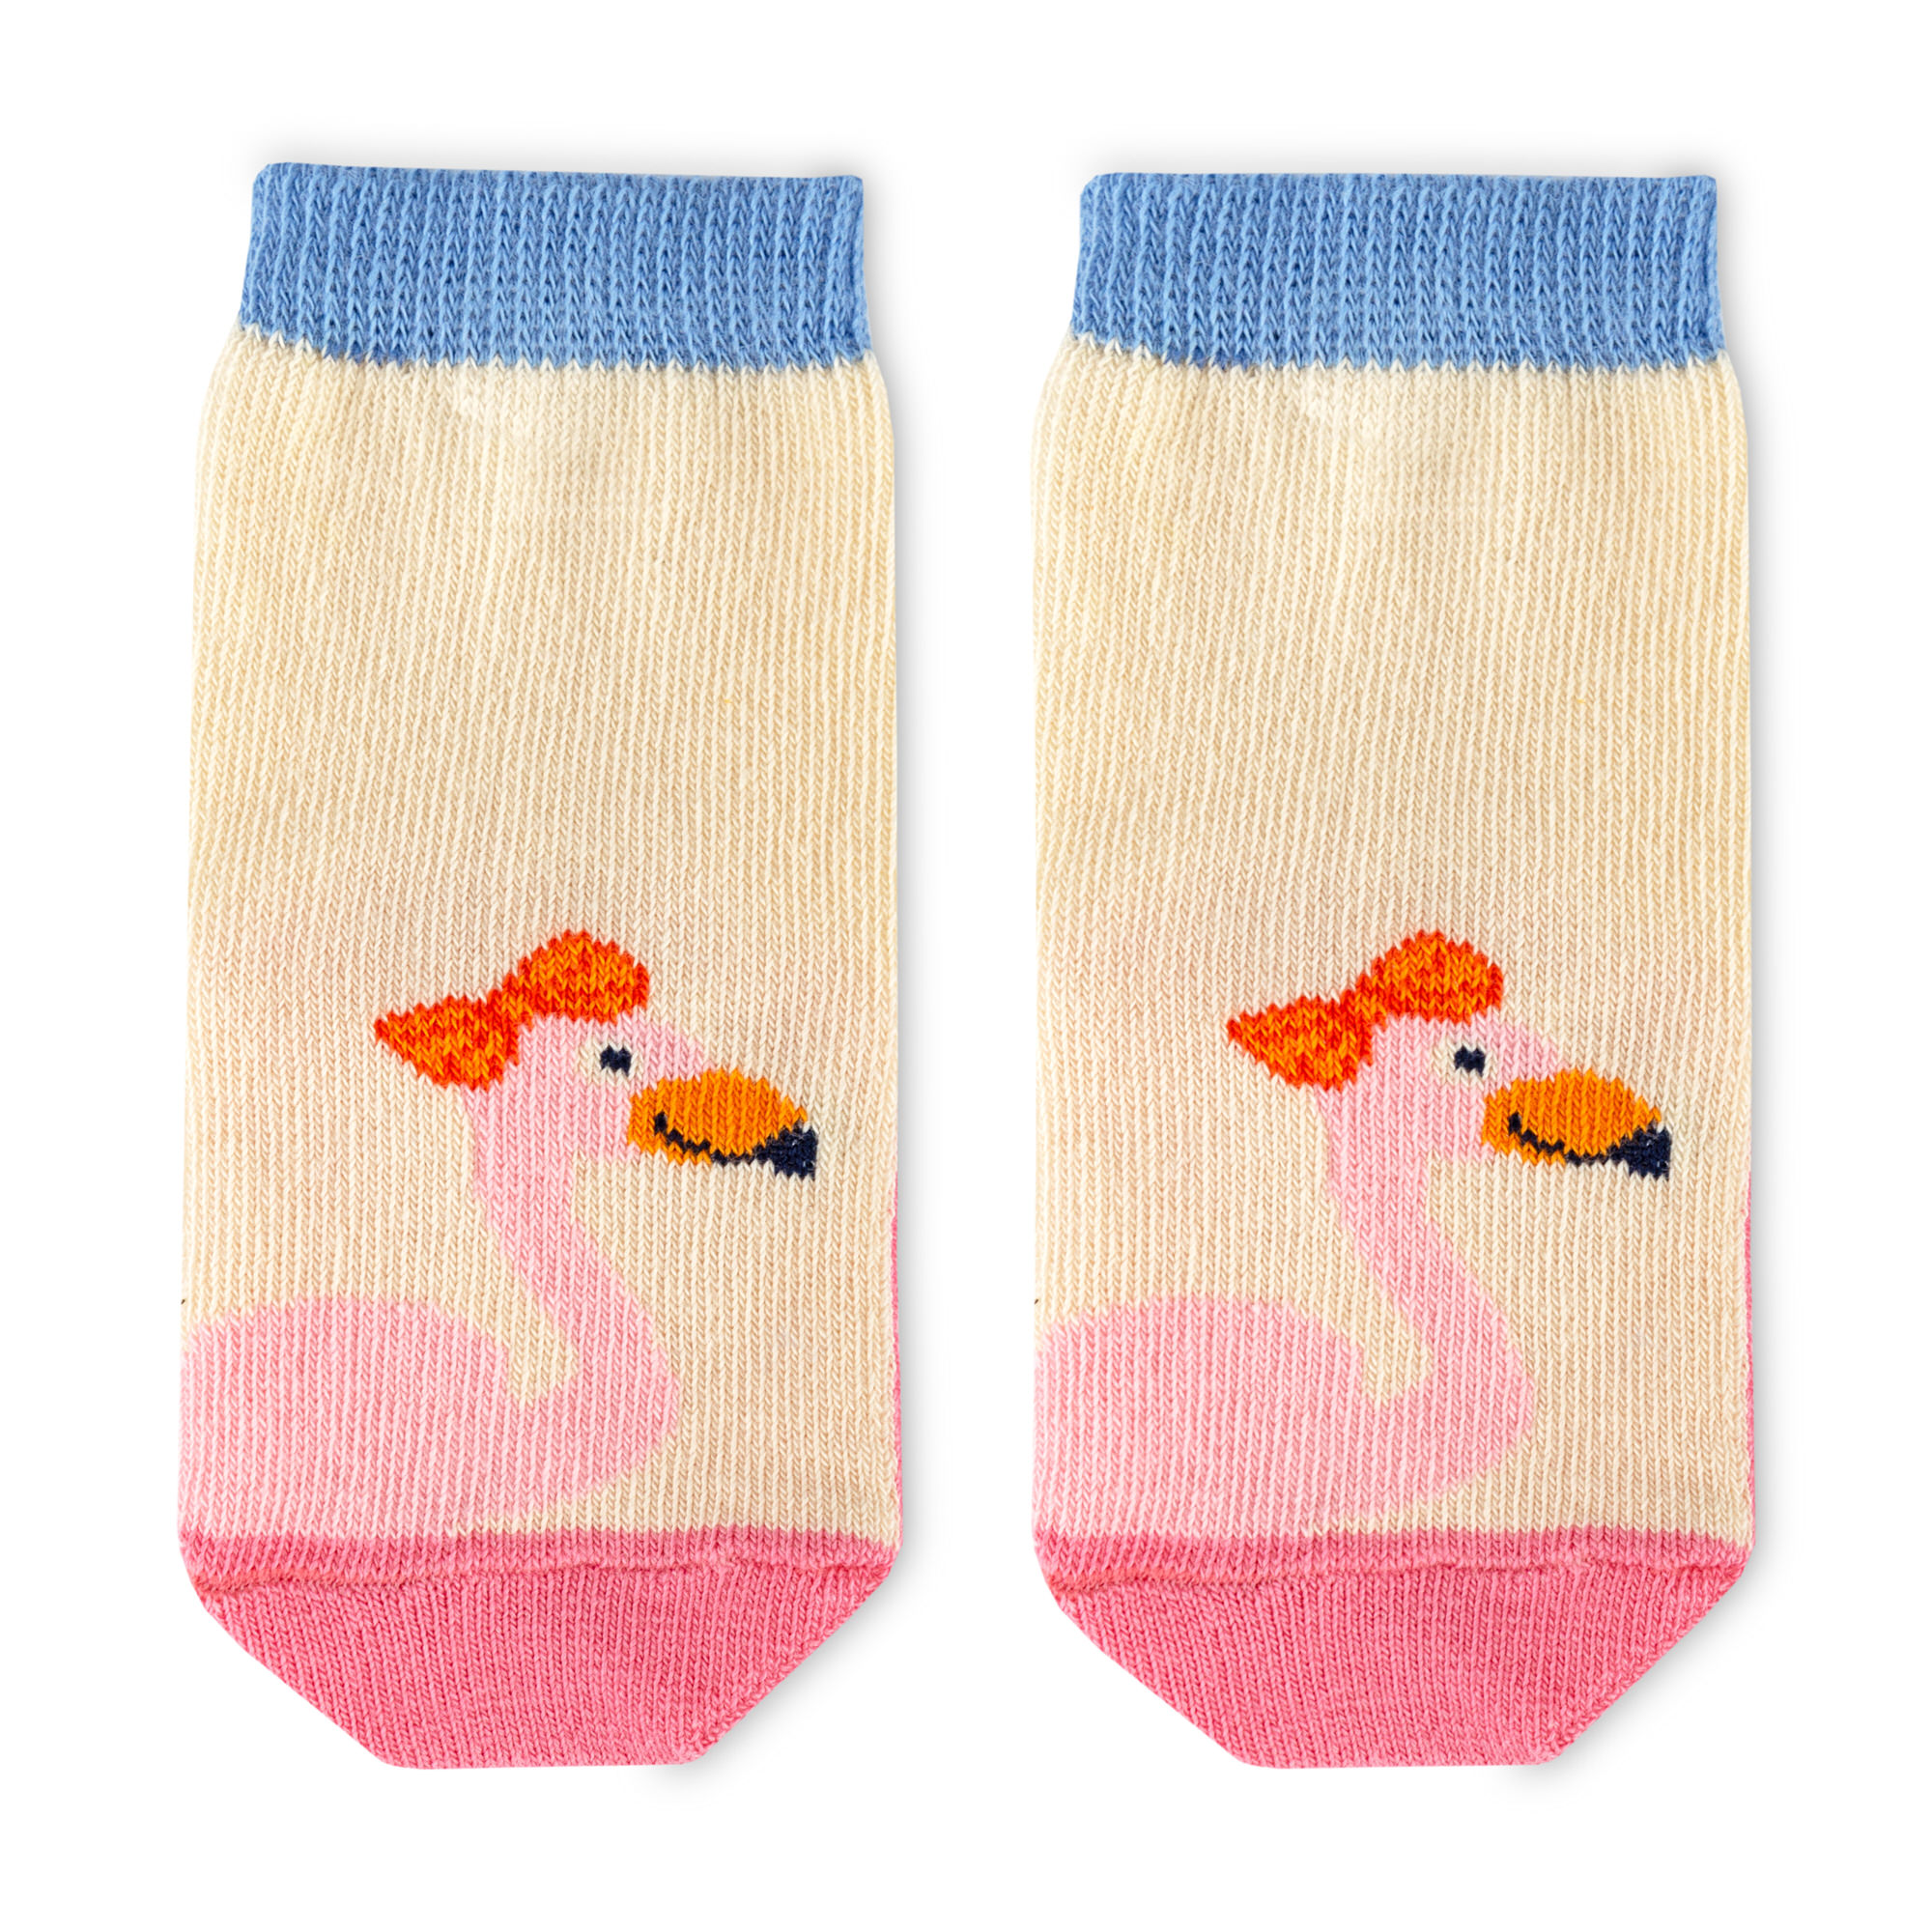 Kinder Socken im 3er Set Wild Flamingo